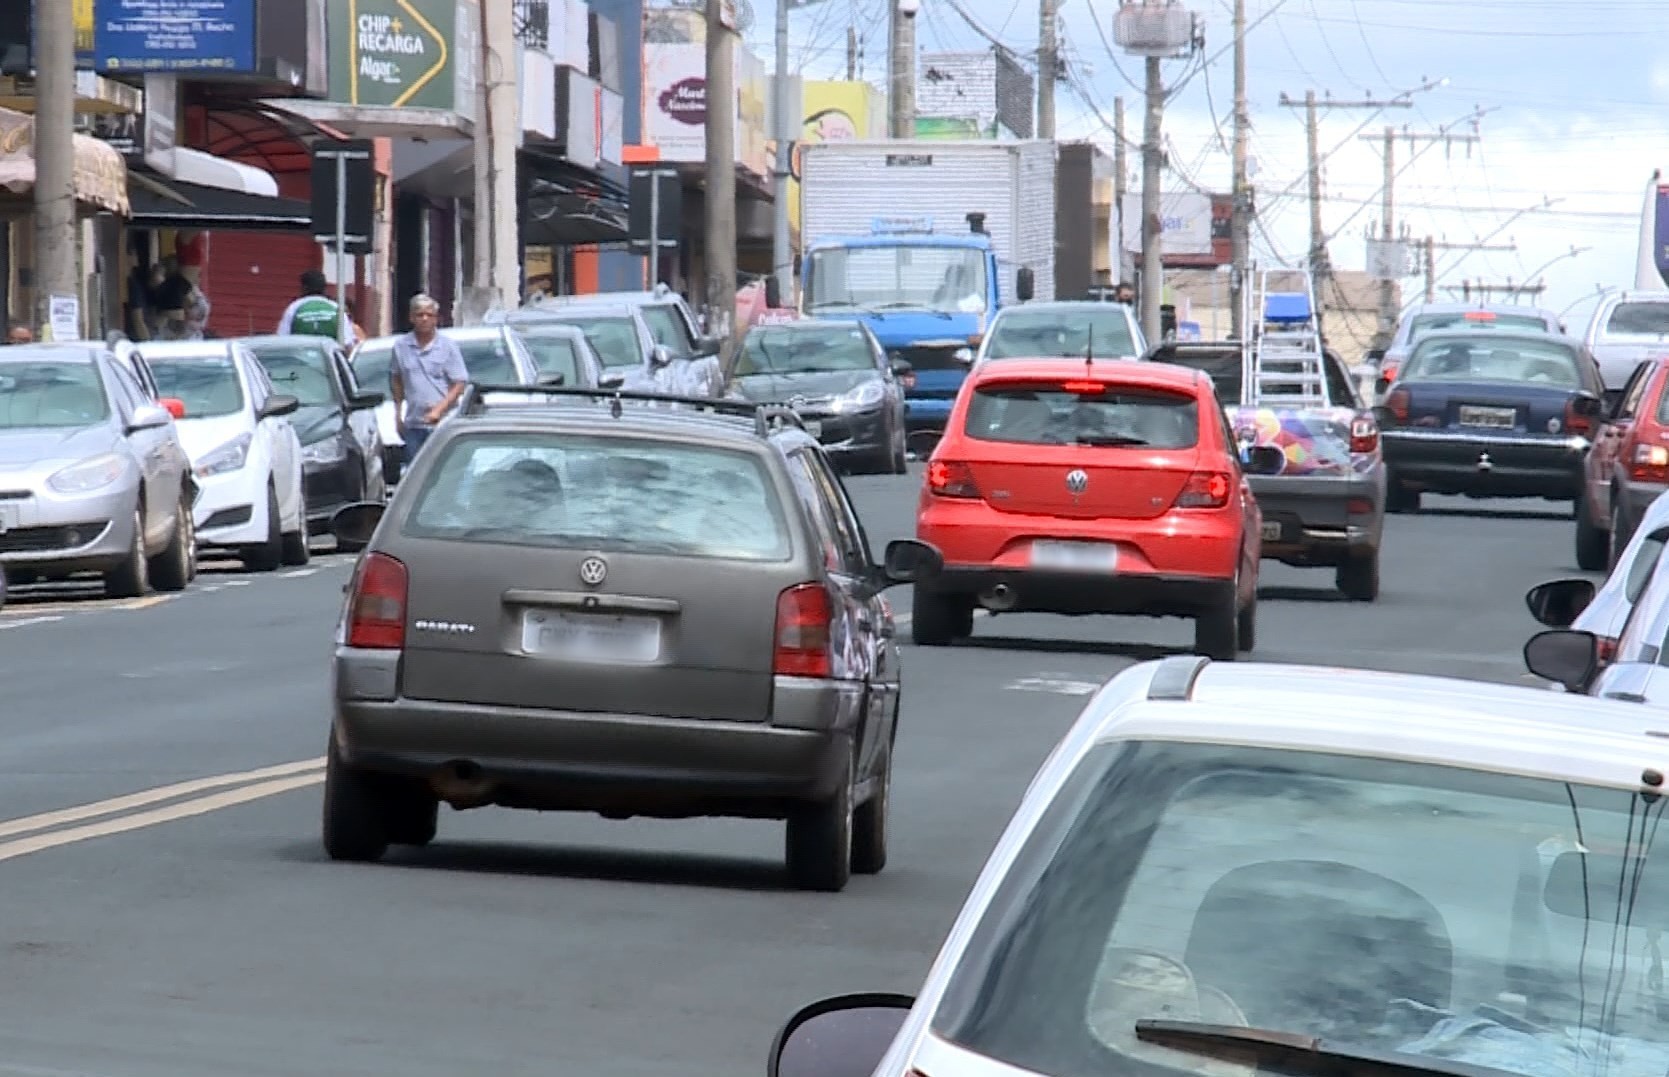 Frota de carros aumenta no Vale do Paraíba, mas veículos estão cada vez mais velhos, aponta Detran